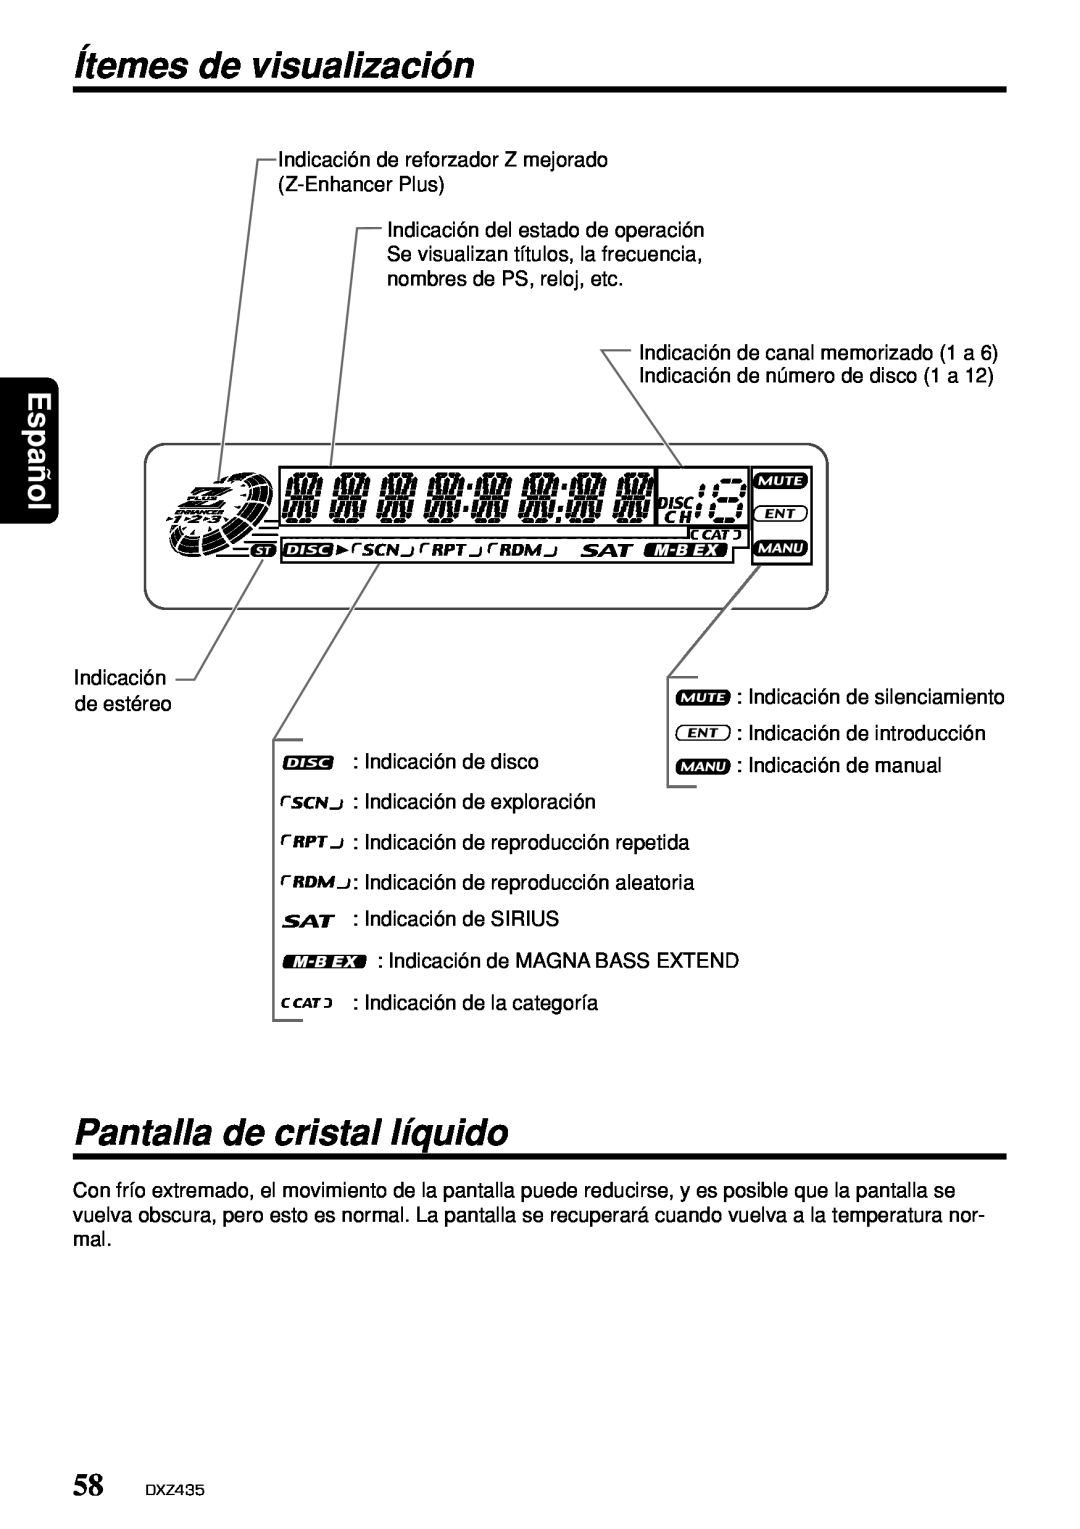 Clarion DXZ435 owner manual Ítemes de visualización, Pantalla de cristal líquido, Español 